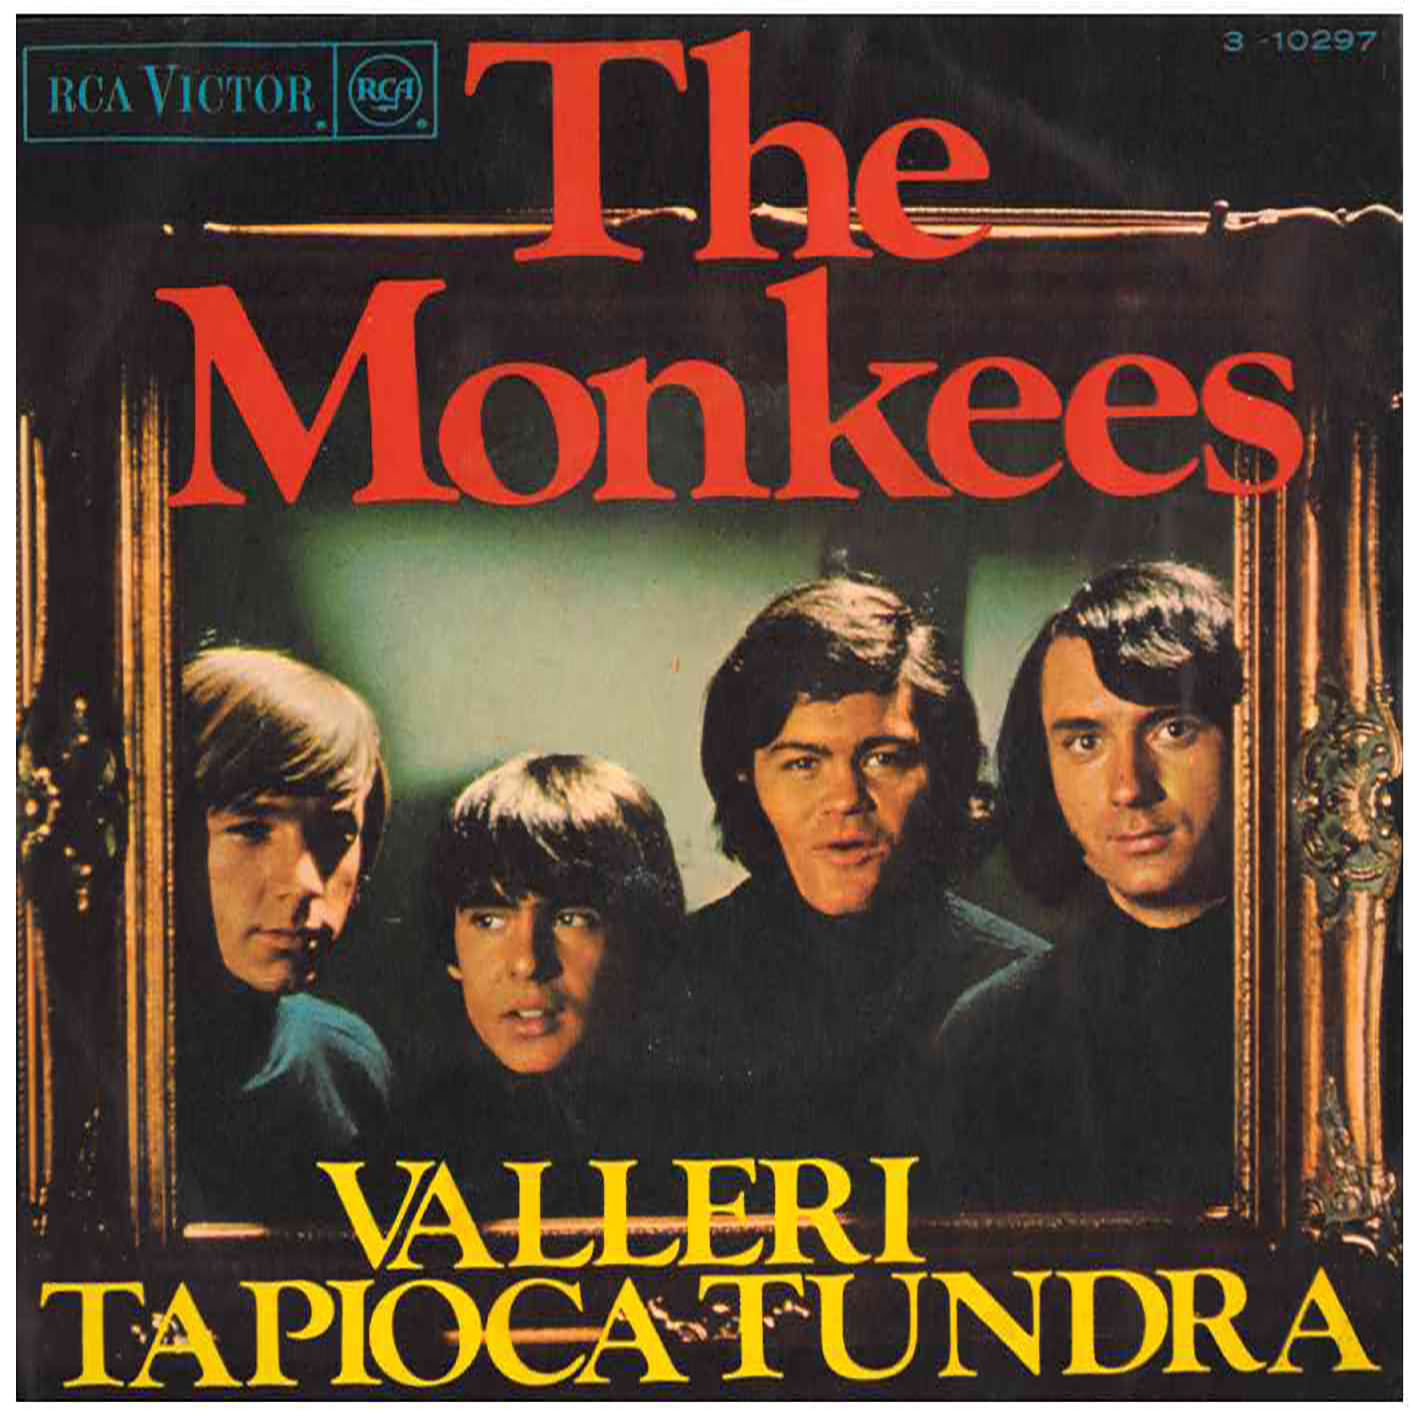 The Monkees – Valleri / Tapioca Tundra